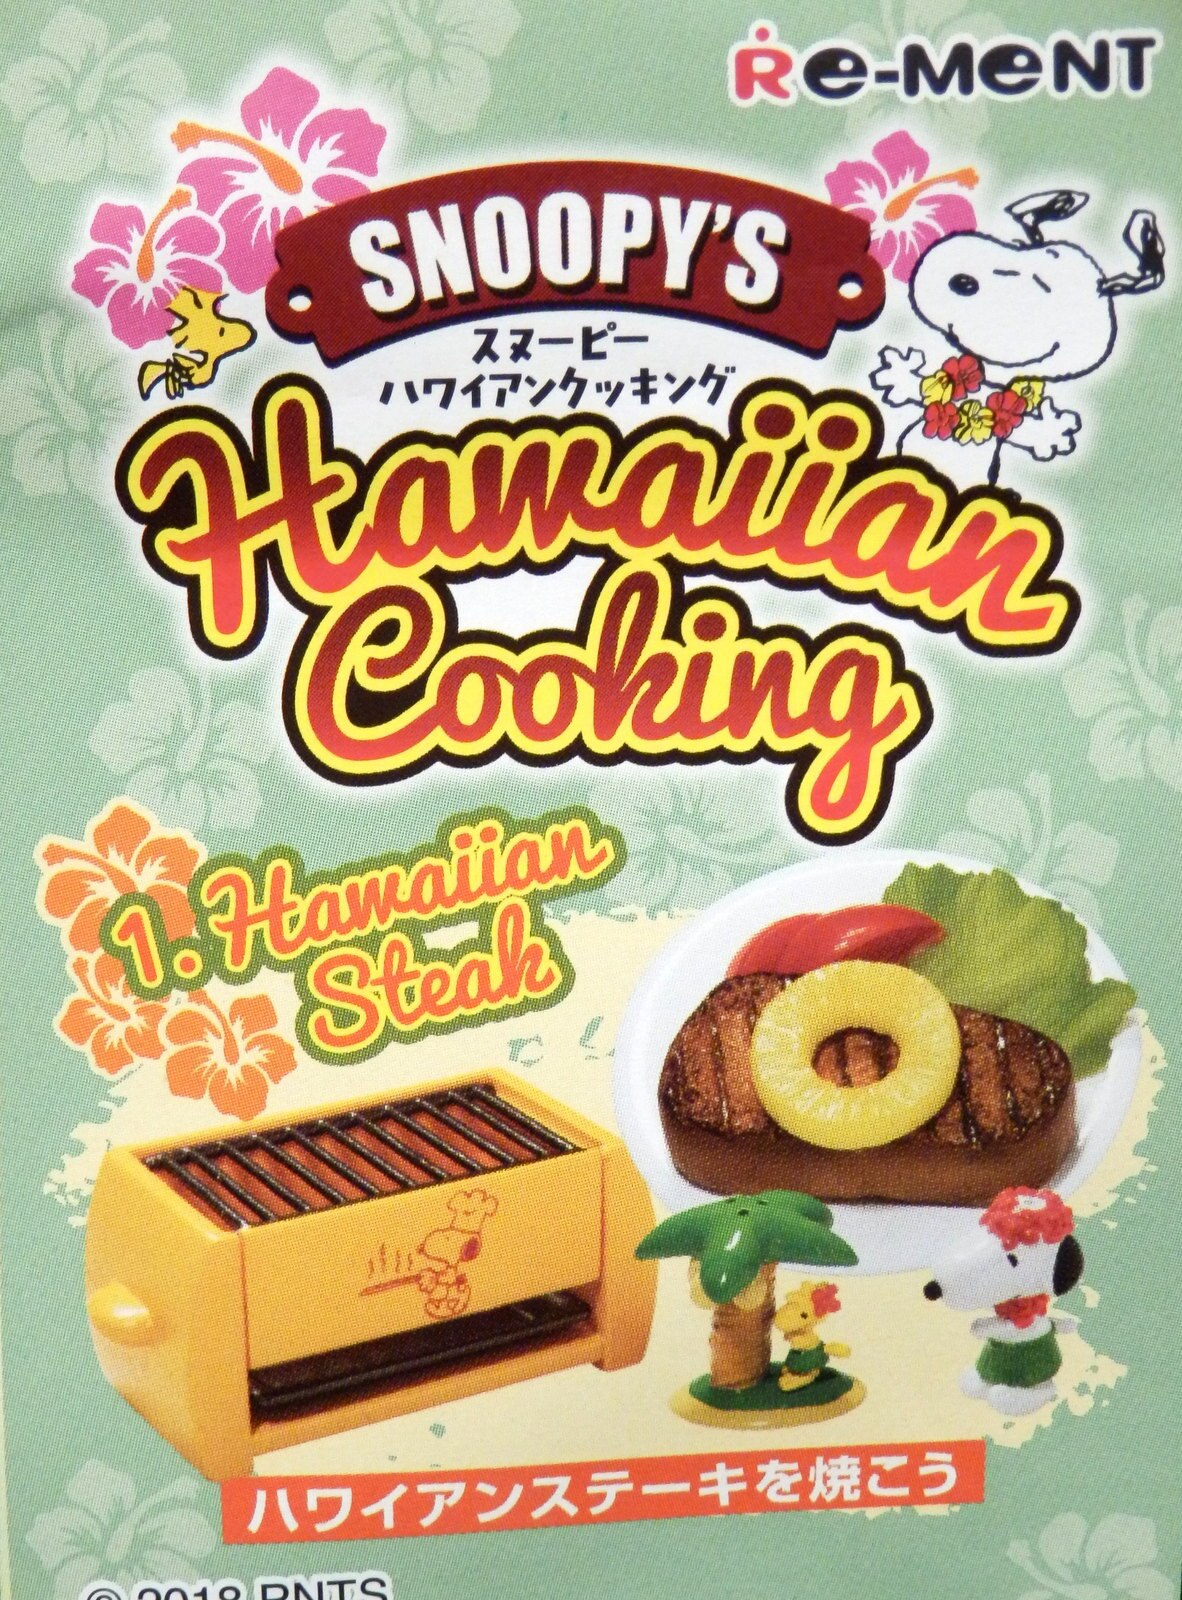 まんだらけ通販 リーメント スヌーピー ハワイアンクッキング 1 ハワイアンステーキを焼こう 福岡店からの出品